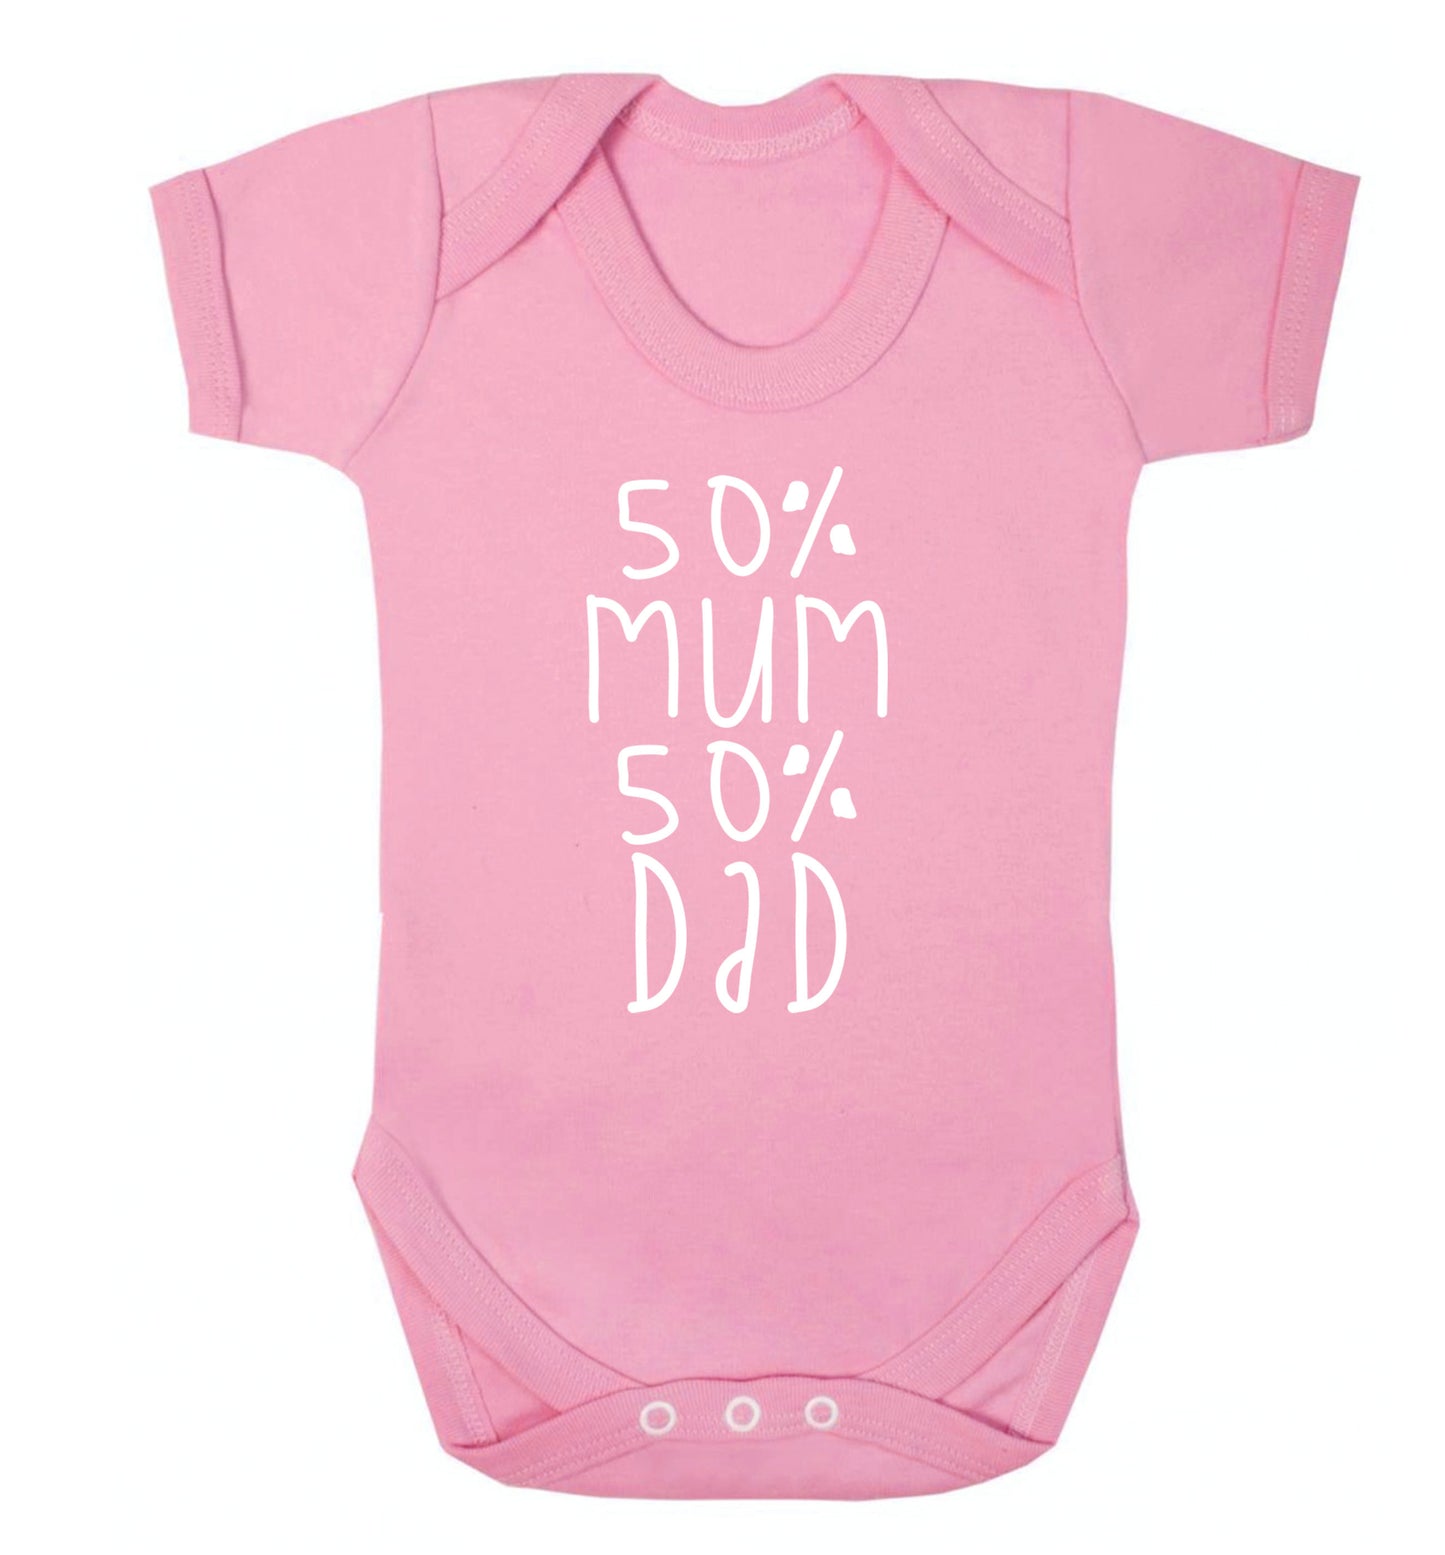 50% mum 50% dad Baby Vest pale pink 18-24 months